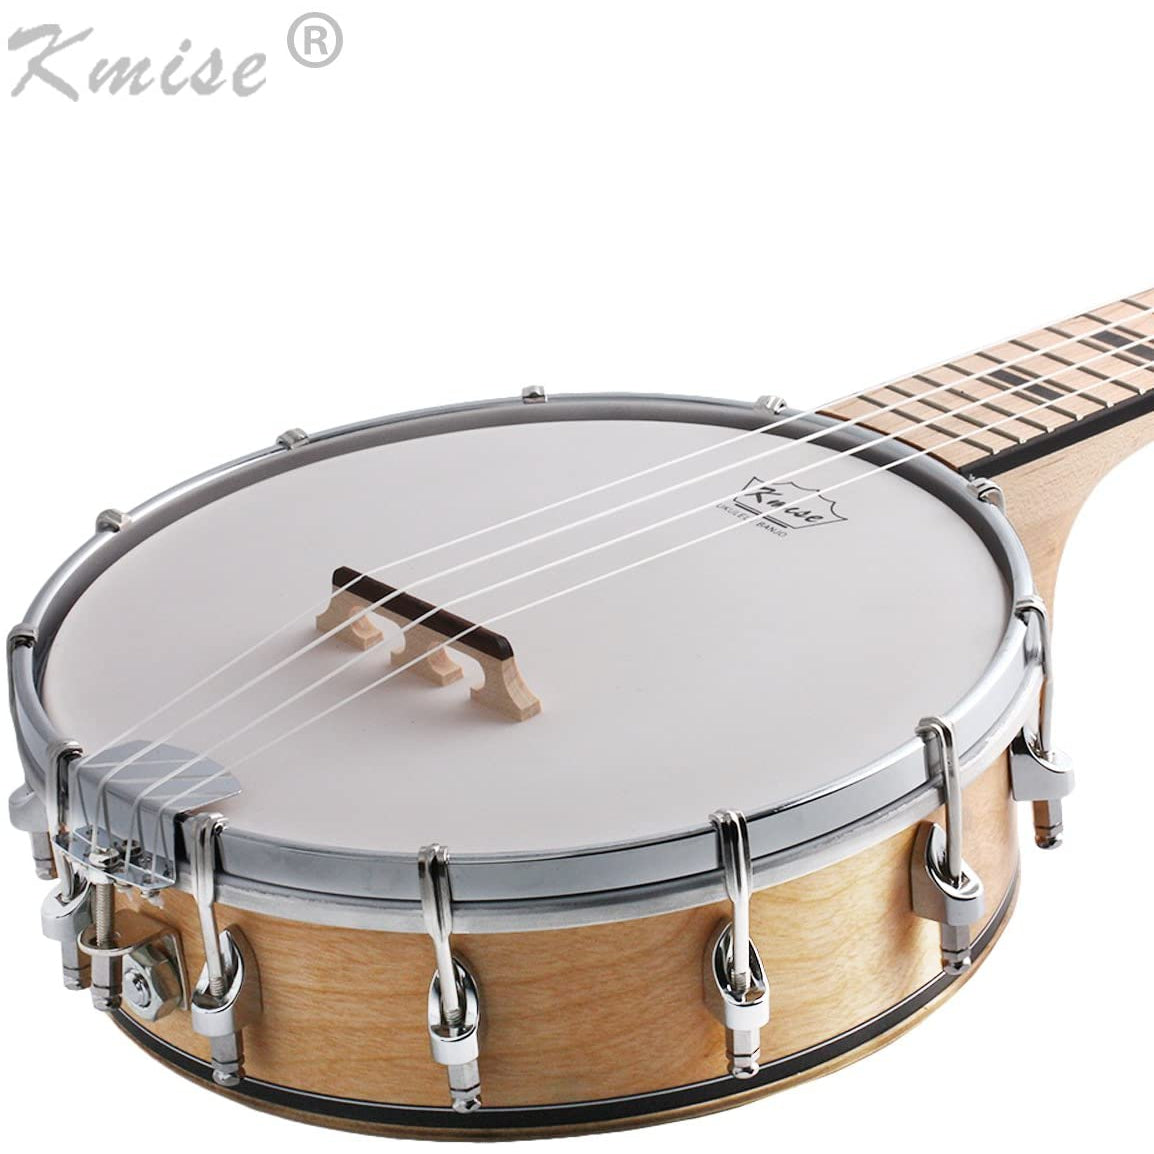 Kmise Banjo Ukulele 4 String Concert Banjo